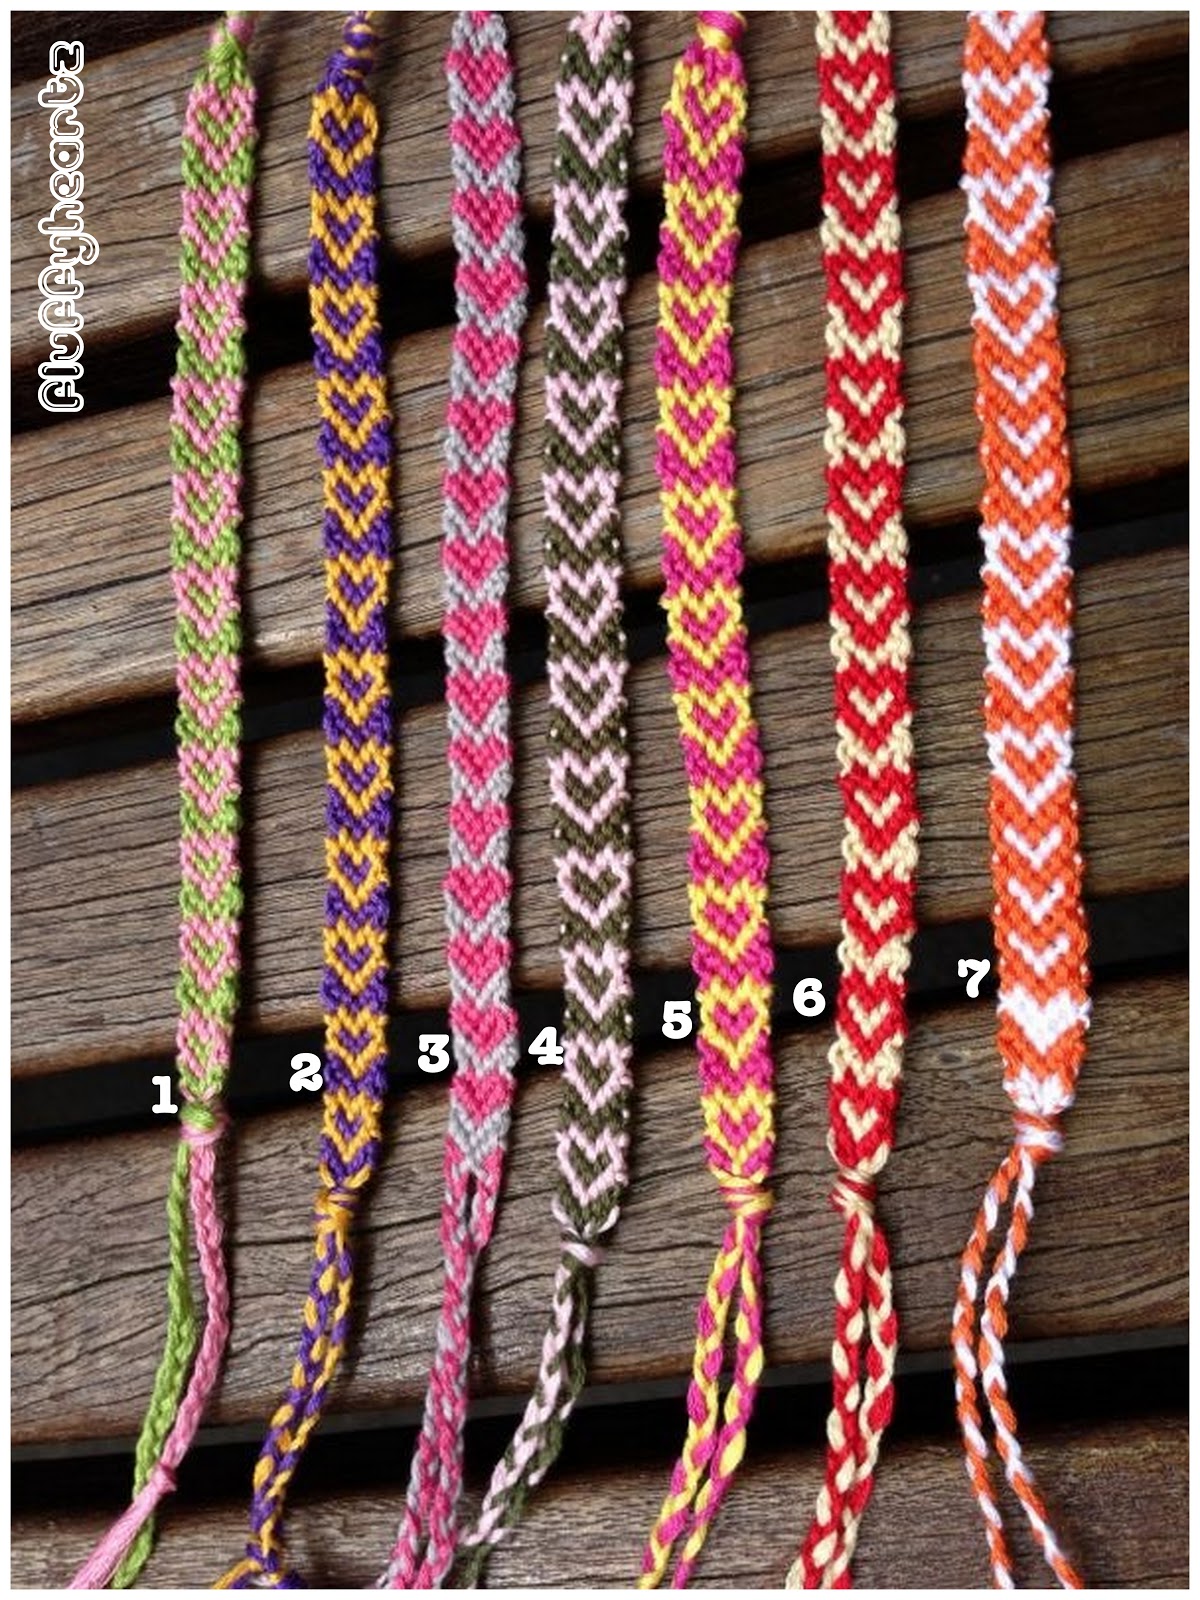 Fluffyheartz ♥: Friendship bracelets (heart shape pattern)